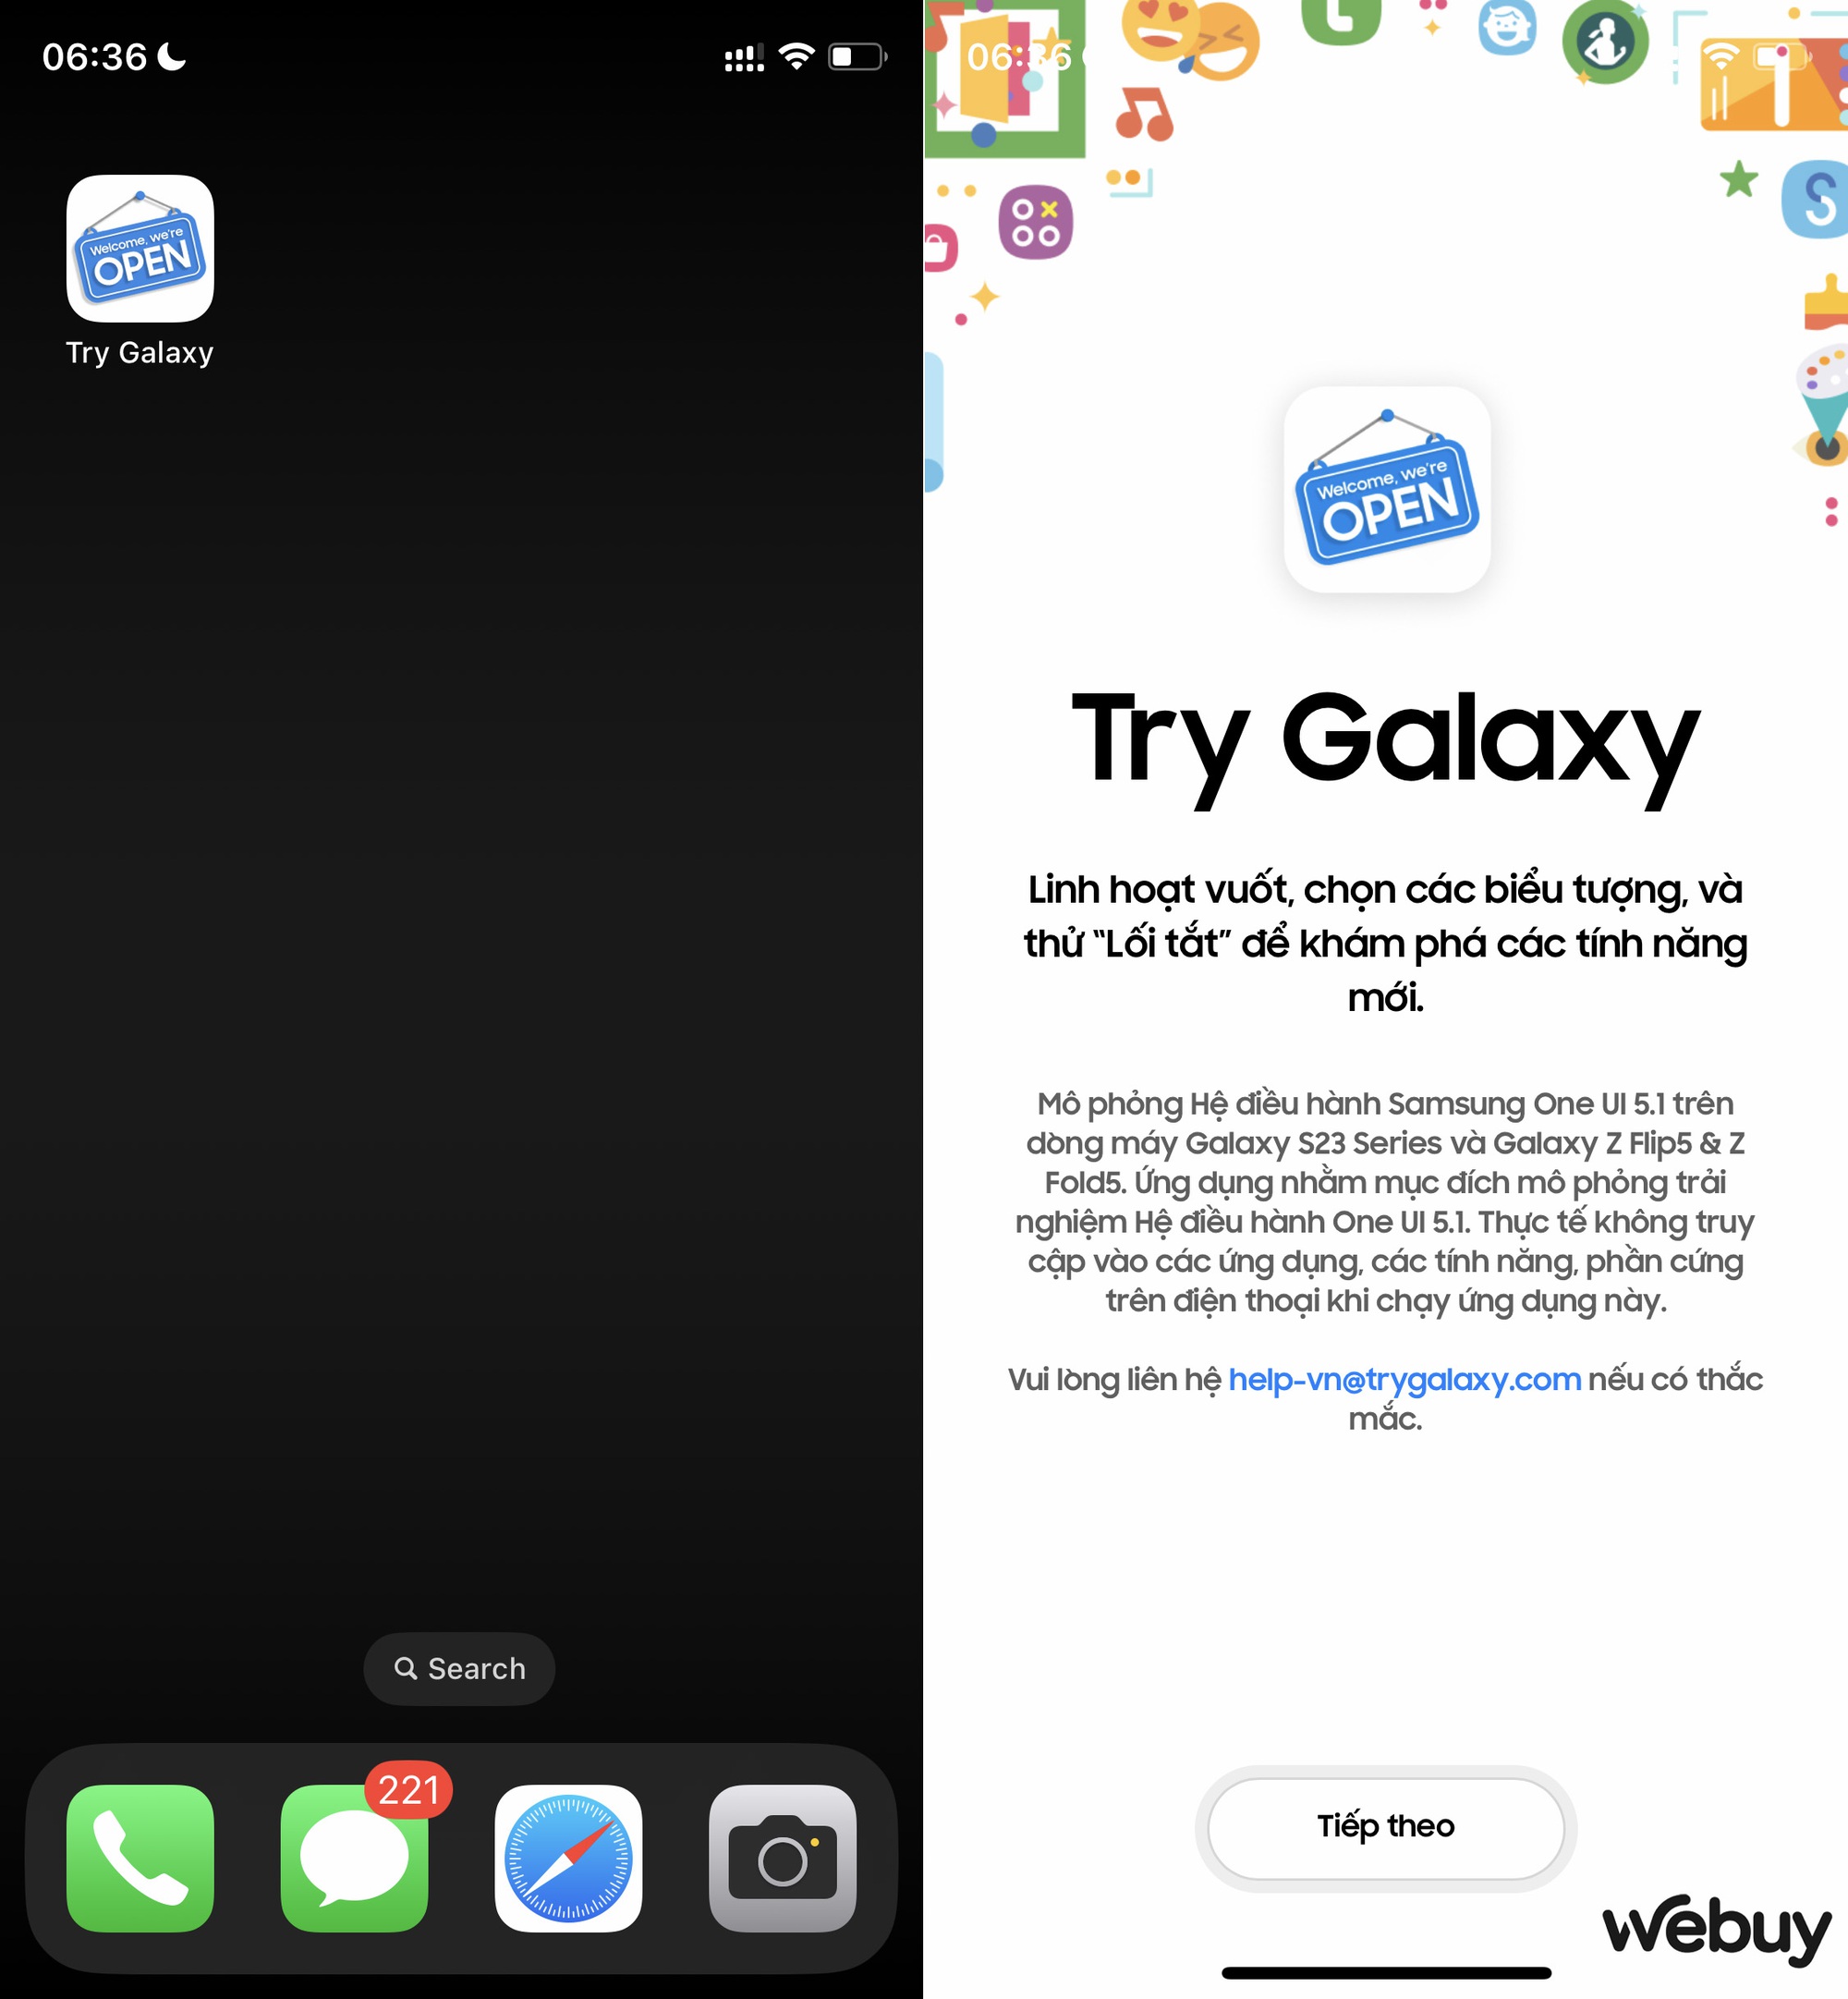 Cách thức sáng tạo của Samsung nhằm lôi kéo người dùng iPhone “nhập hội linh hoạt” - Ảnh 2.